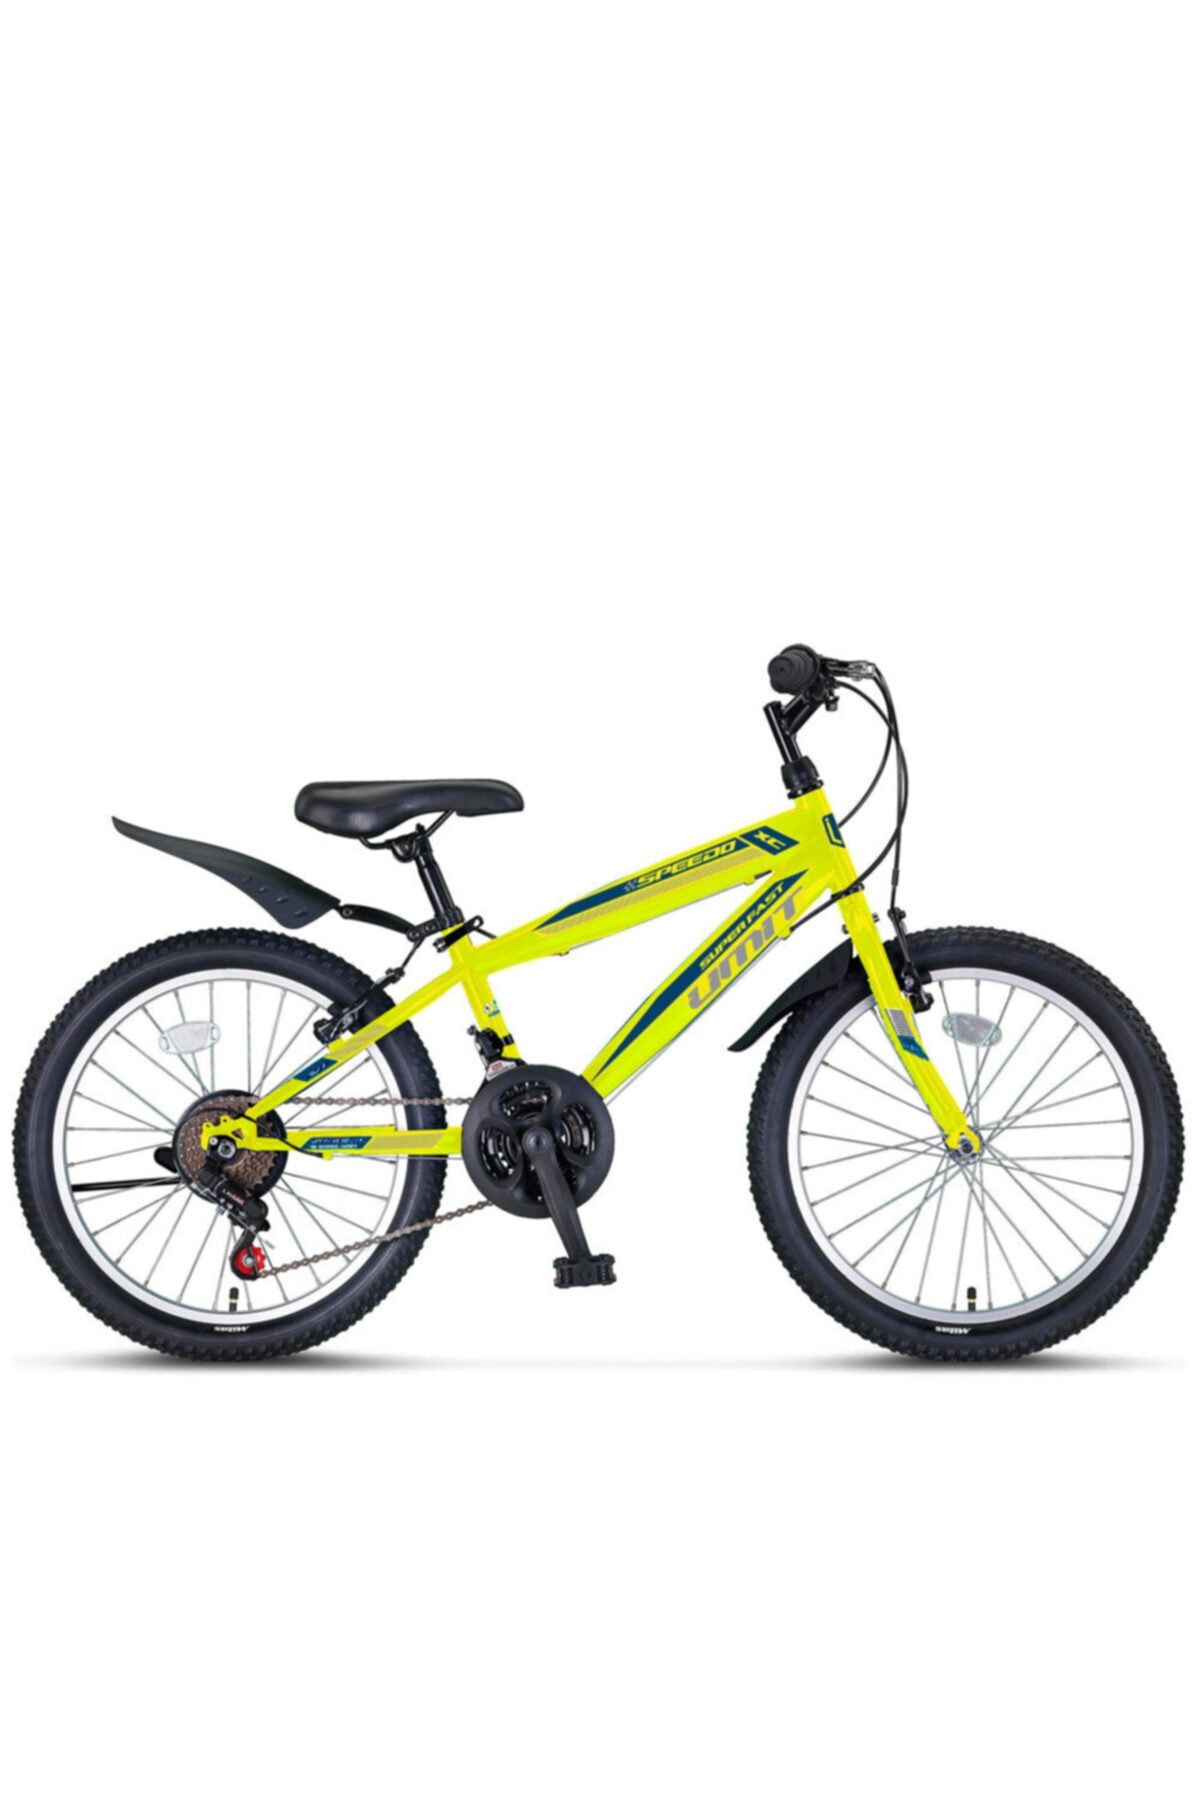 Ümit 2067 Speedo 20 Jant Çocuk Bisikleti Vitesli (120-140 Cm Boy)